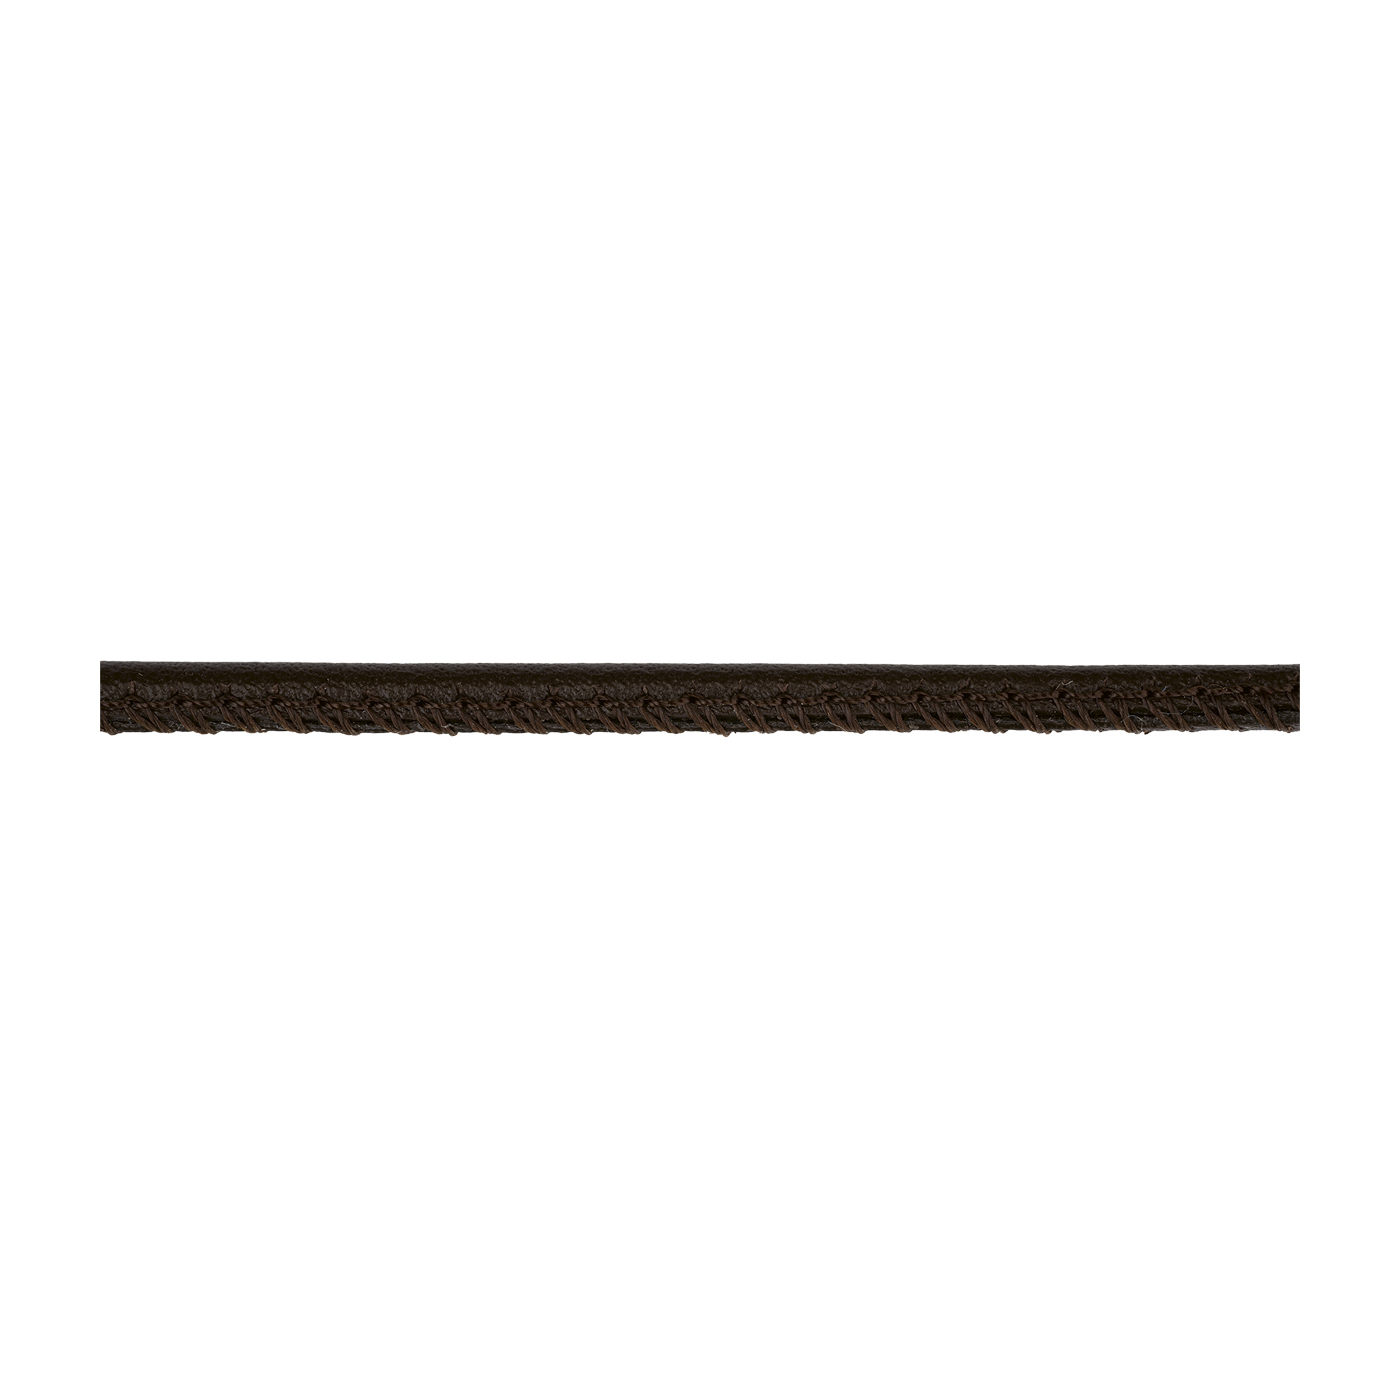 Lederband, dunkelbraun, ø 3 mm, aus Kalbsleder - 1 m